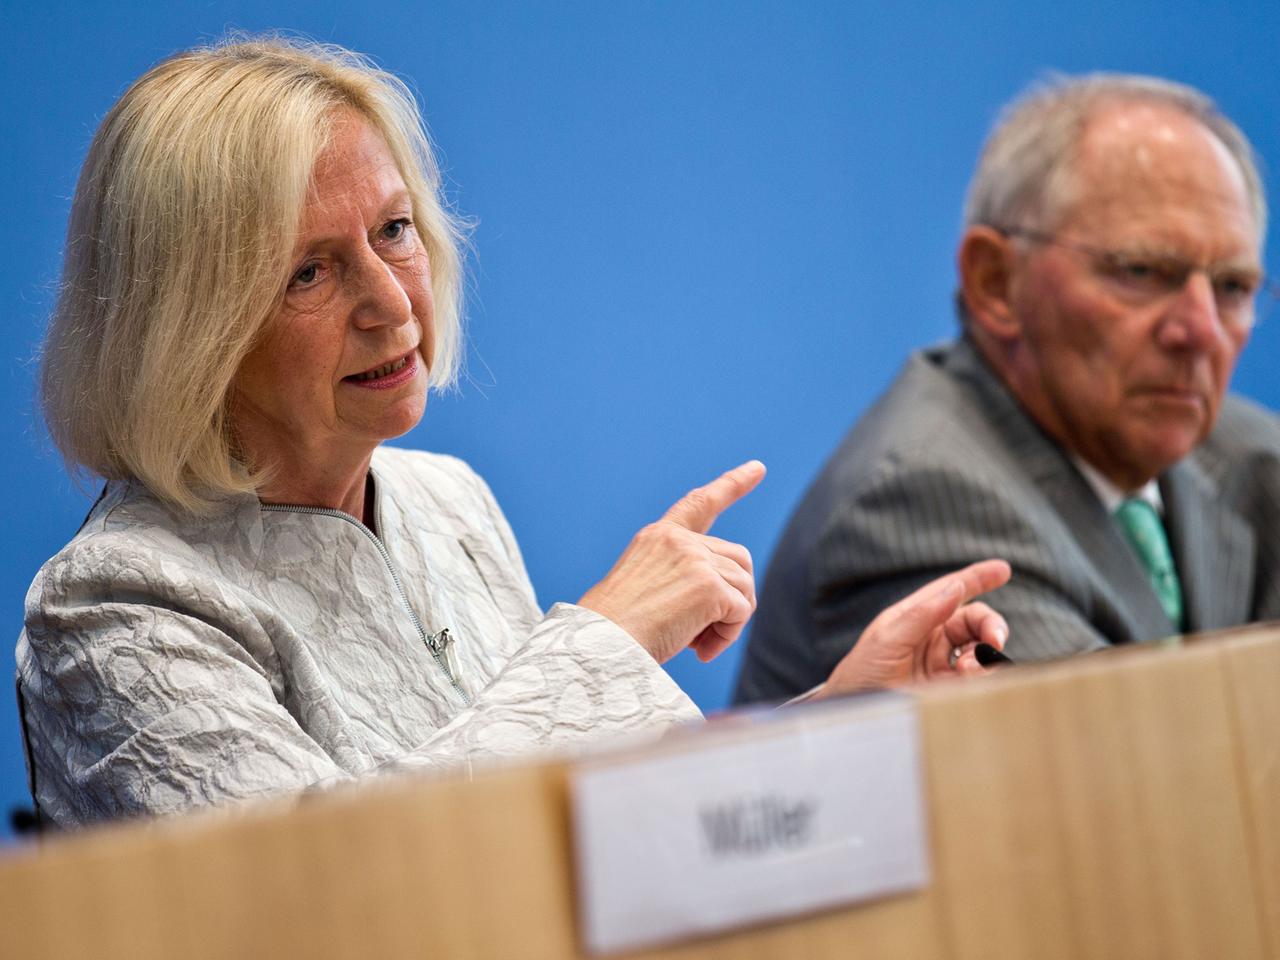 Bundesbildungsministerin Johanna Wanka (CDU) spricht neben Bundesfinanzminister Wolfgang Schäuble (CDU) während einer Pressekonferenz. Im Rahmen der Einigung zur Bildungsfinanzierung soll künftig das Bafög komplett vom Bund übernommen werden.